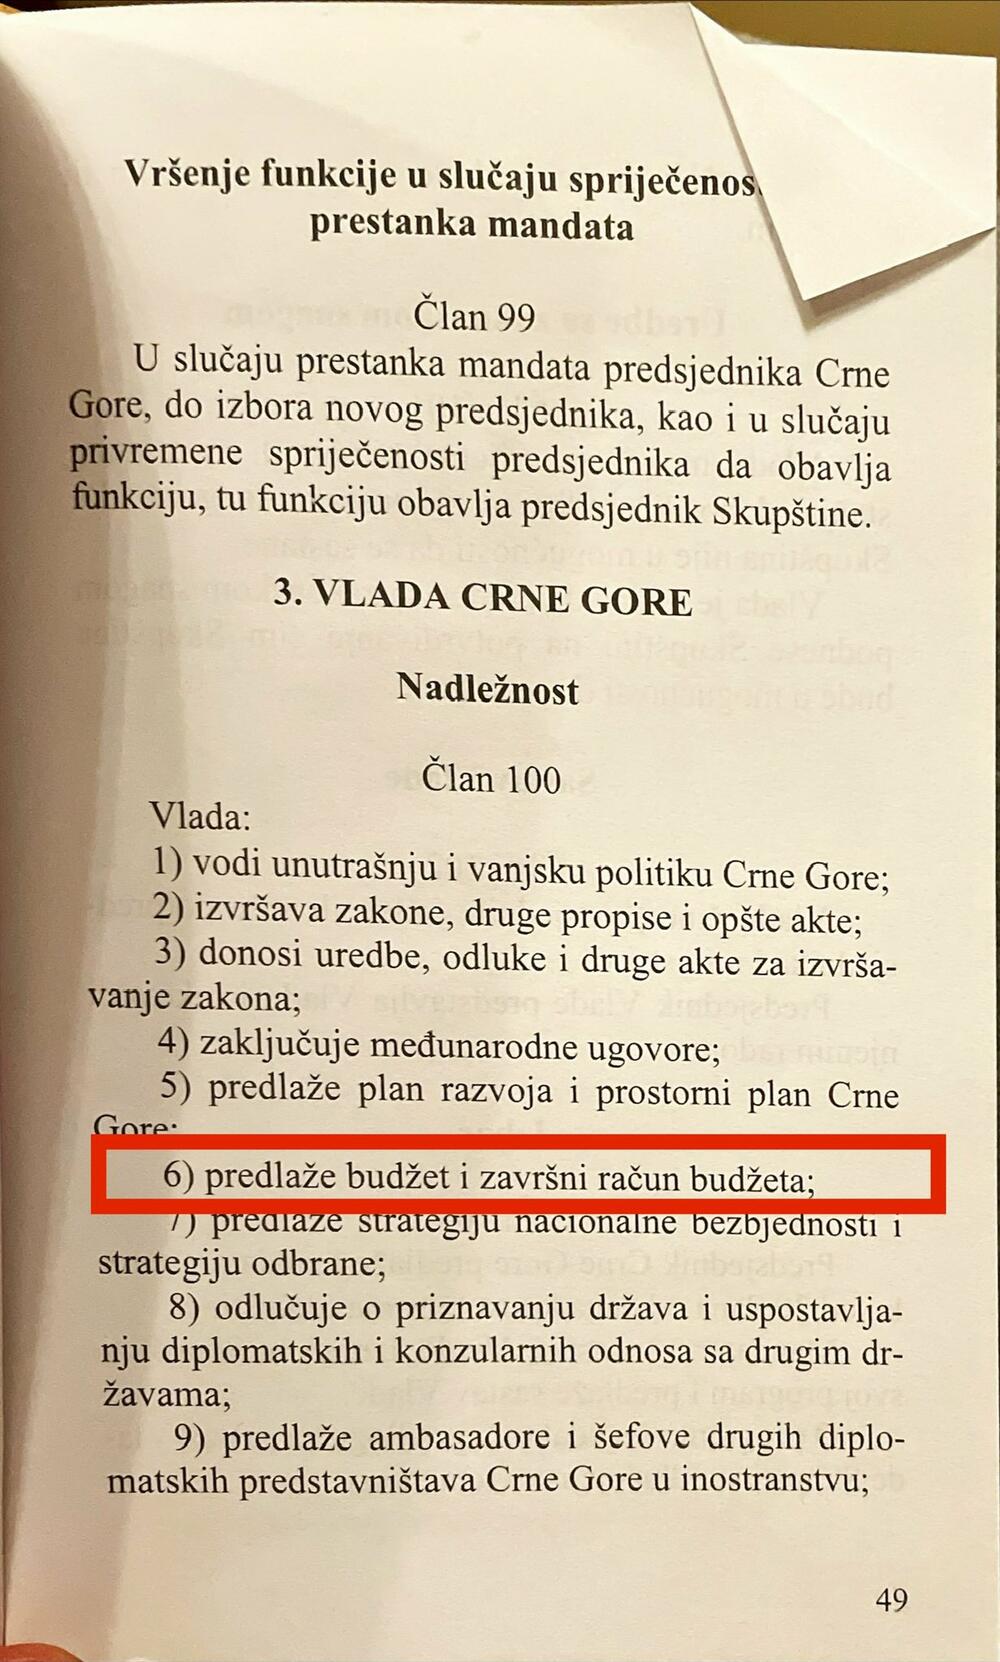 Raško Konjević ustav